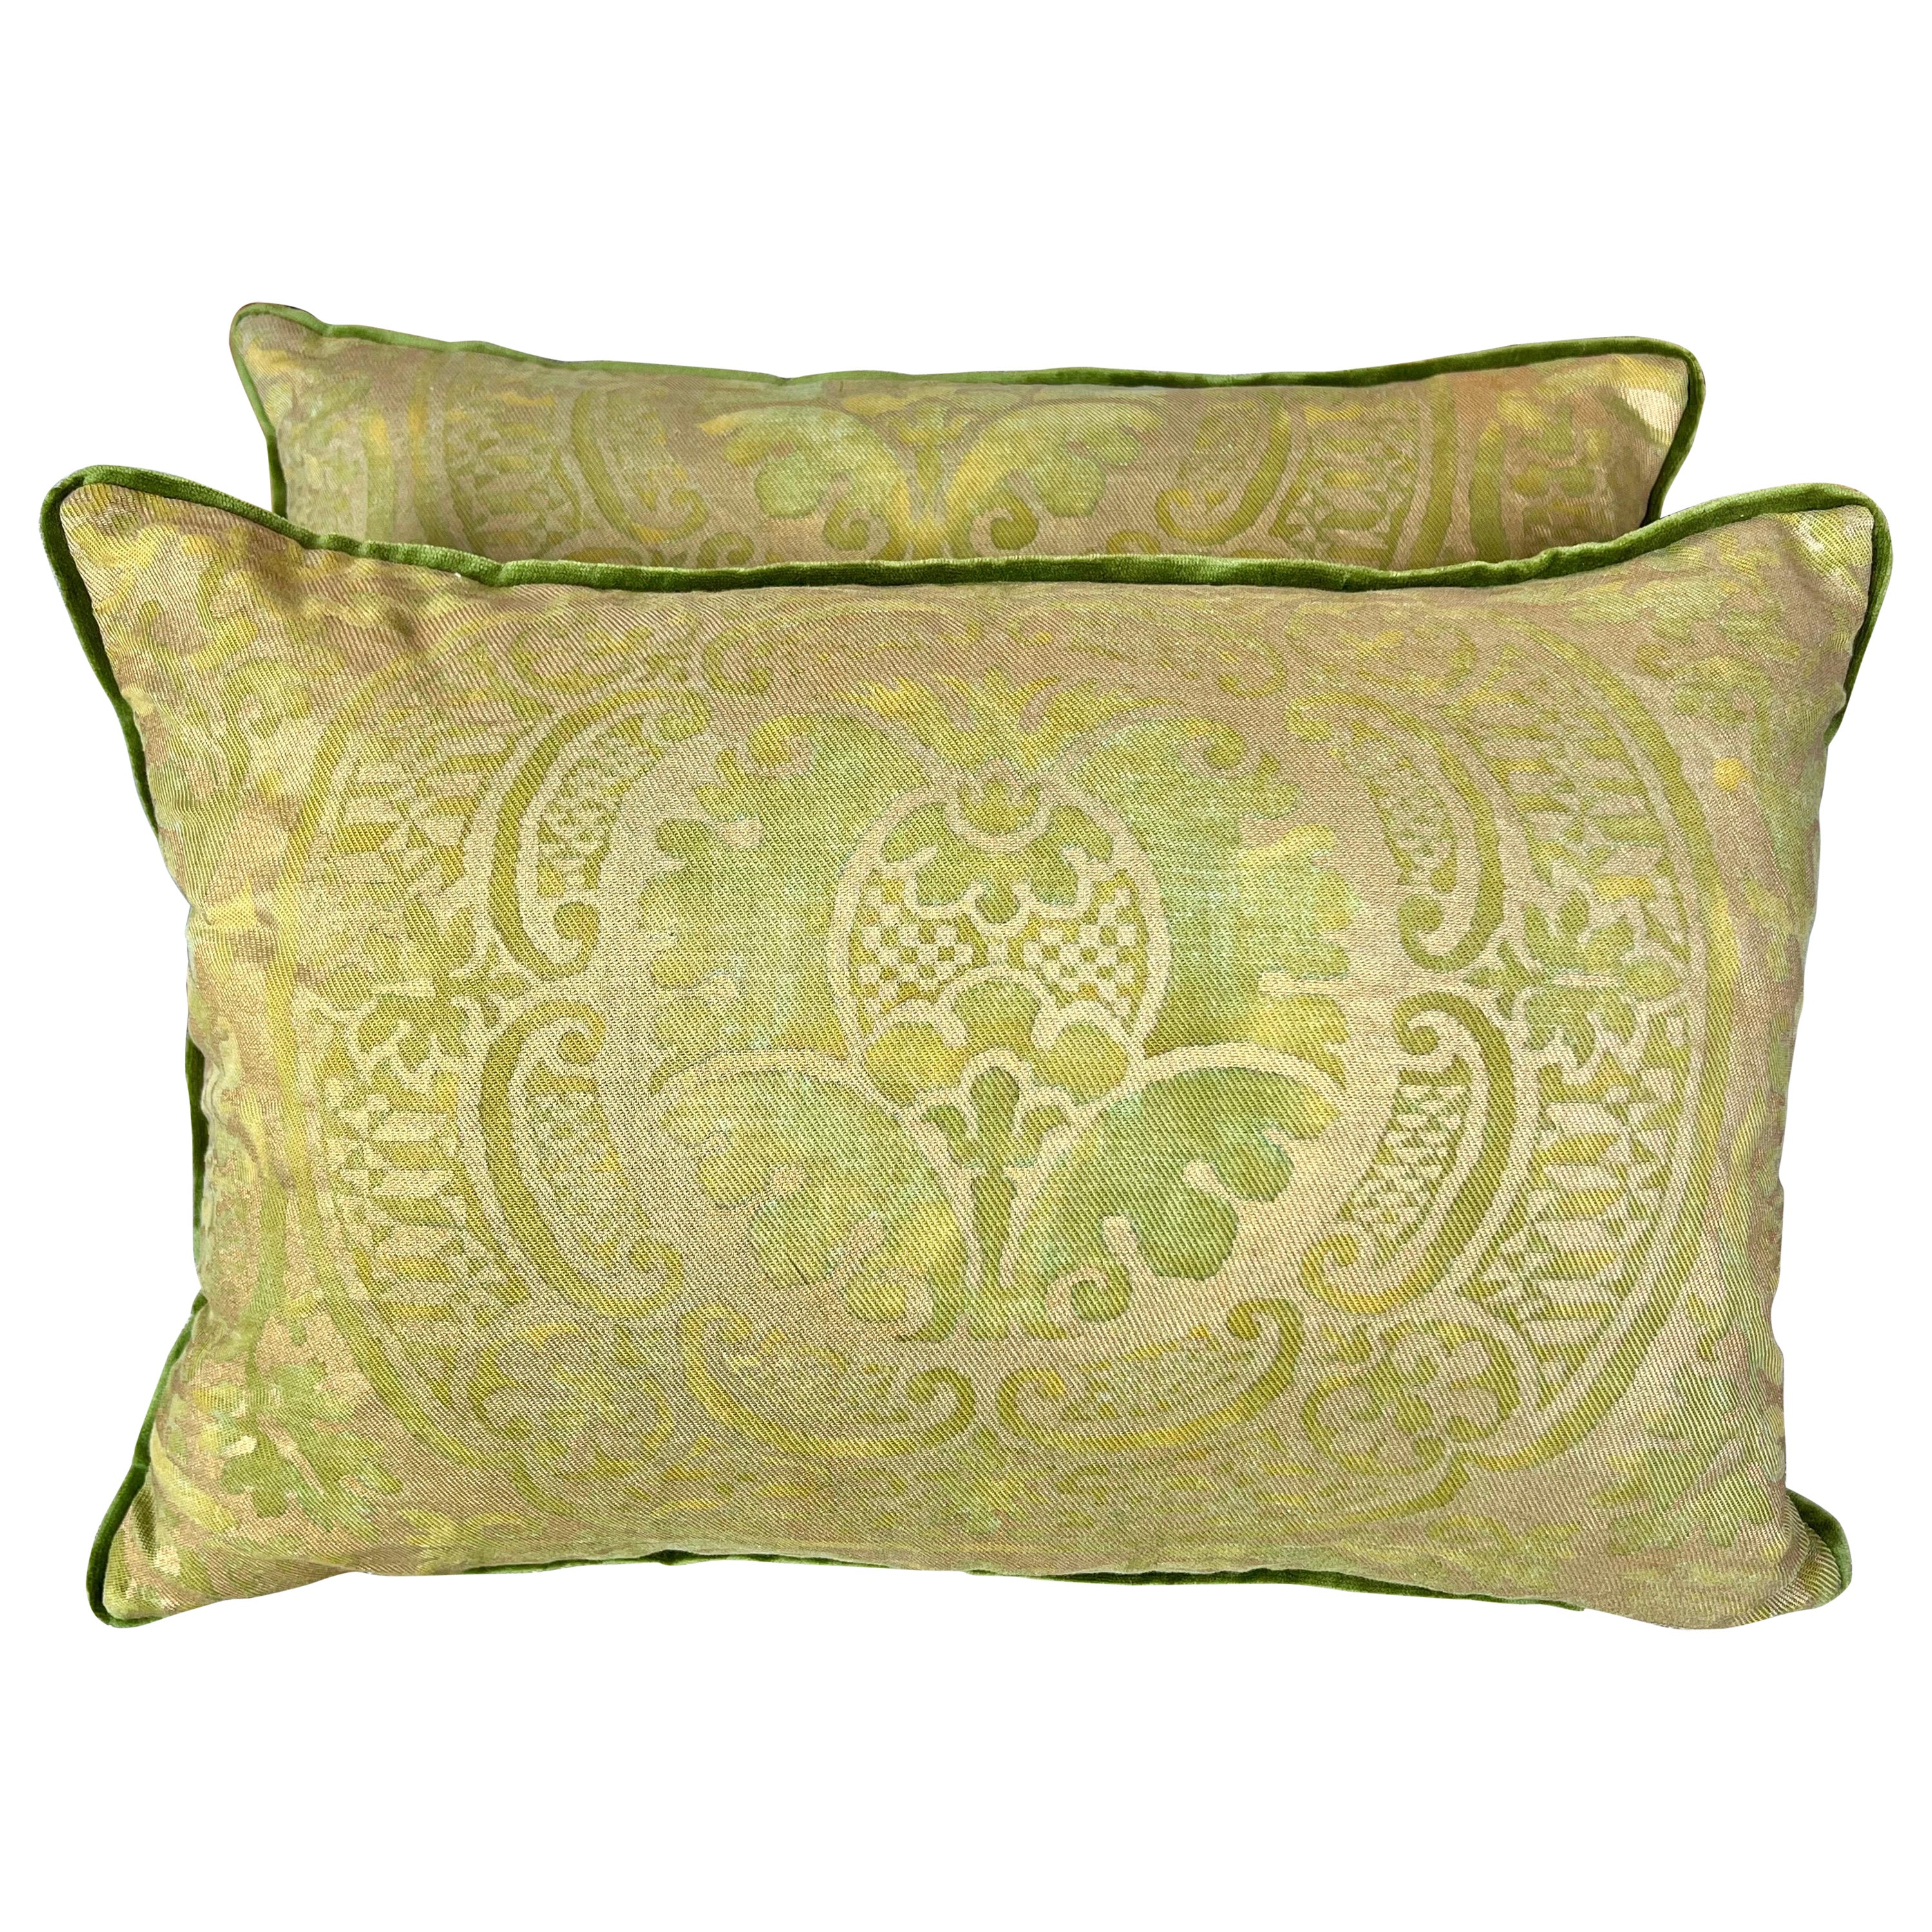 Pair of Green Orsini Patterned Fortuny Pillows w/ Velvet Backs